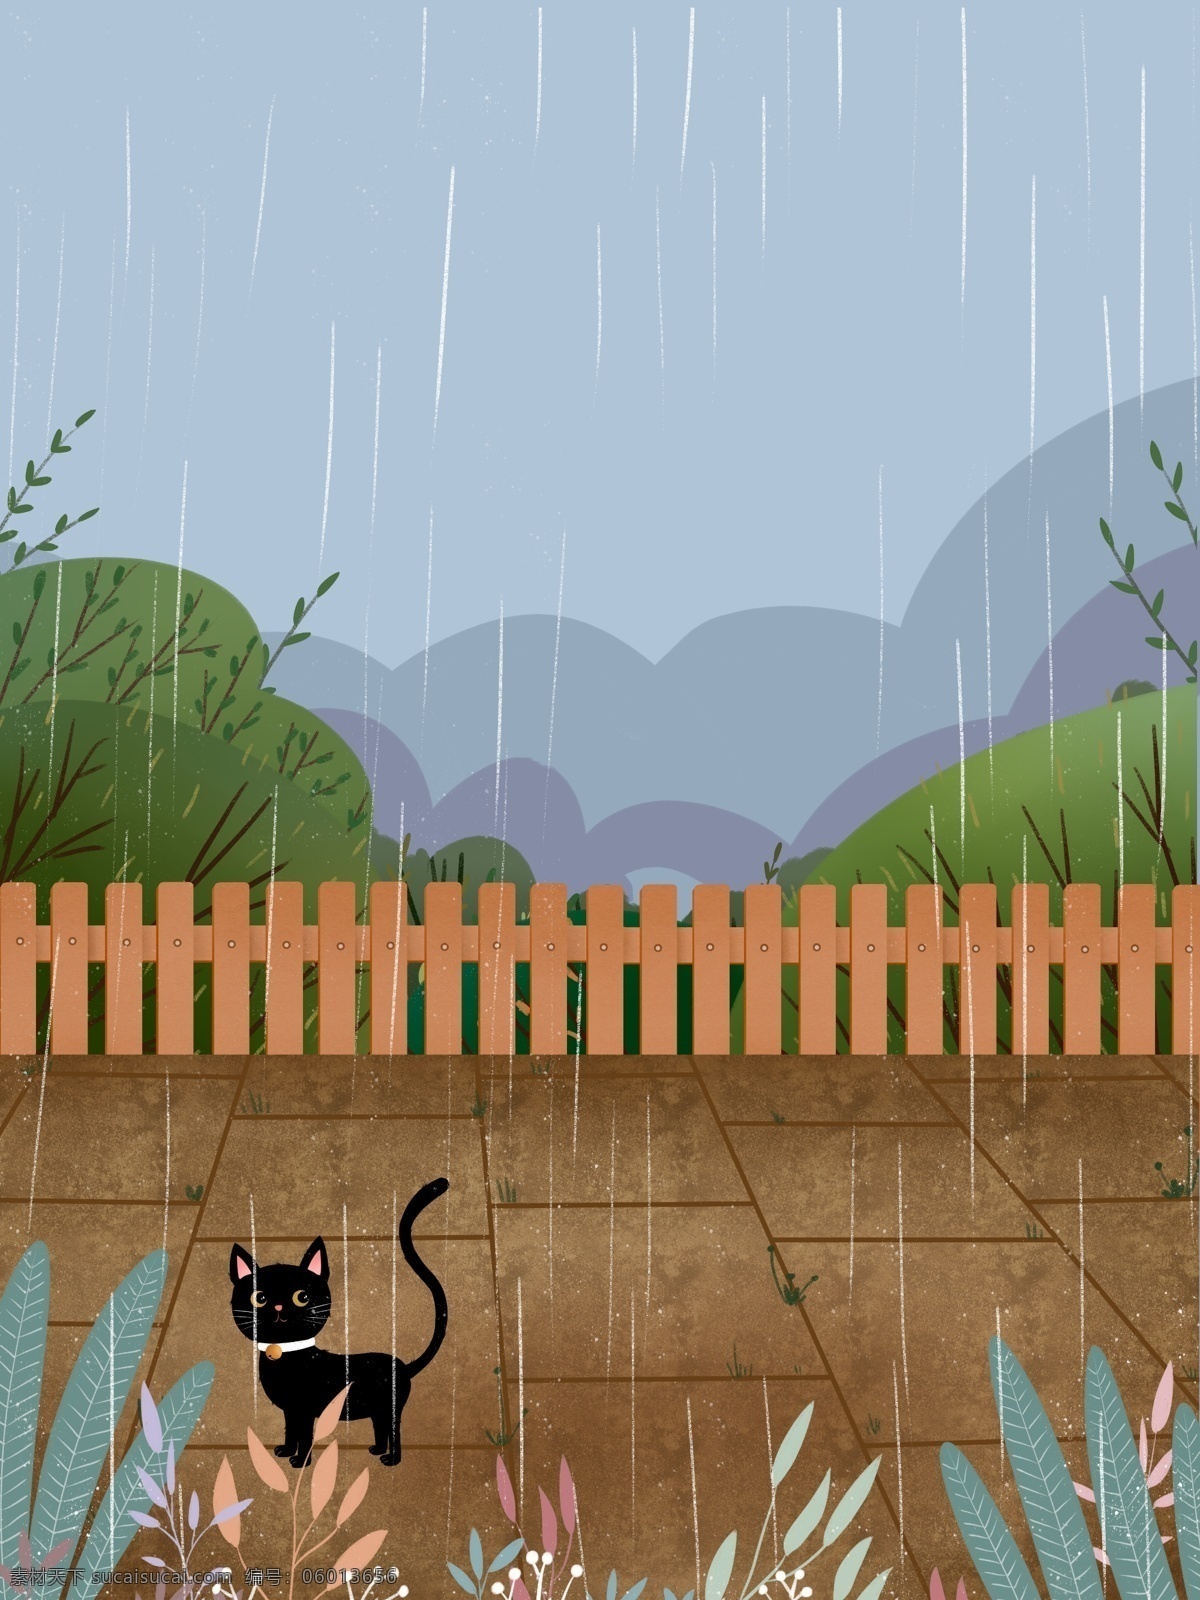 雨季 唯美 院内 风景 插画 背景 下雨 绿色背景 治愈系背景 插画背景 植物背景 院内风景